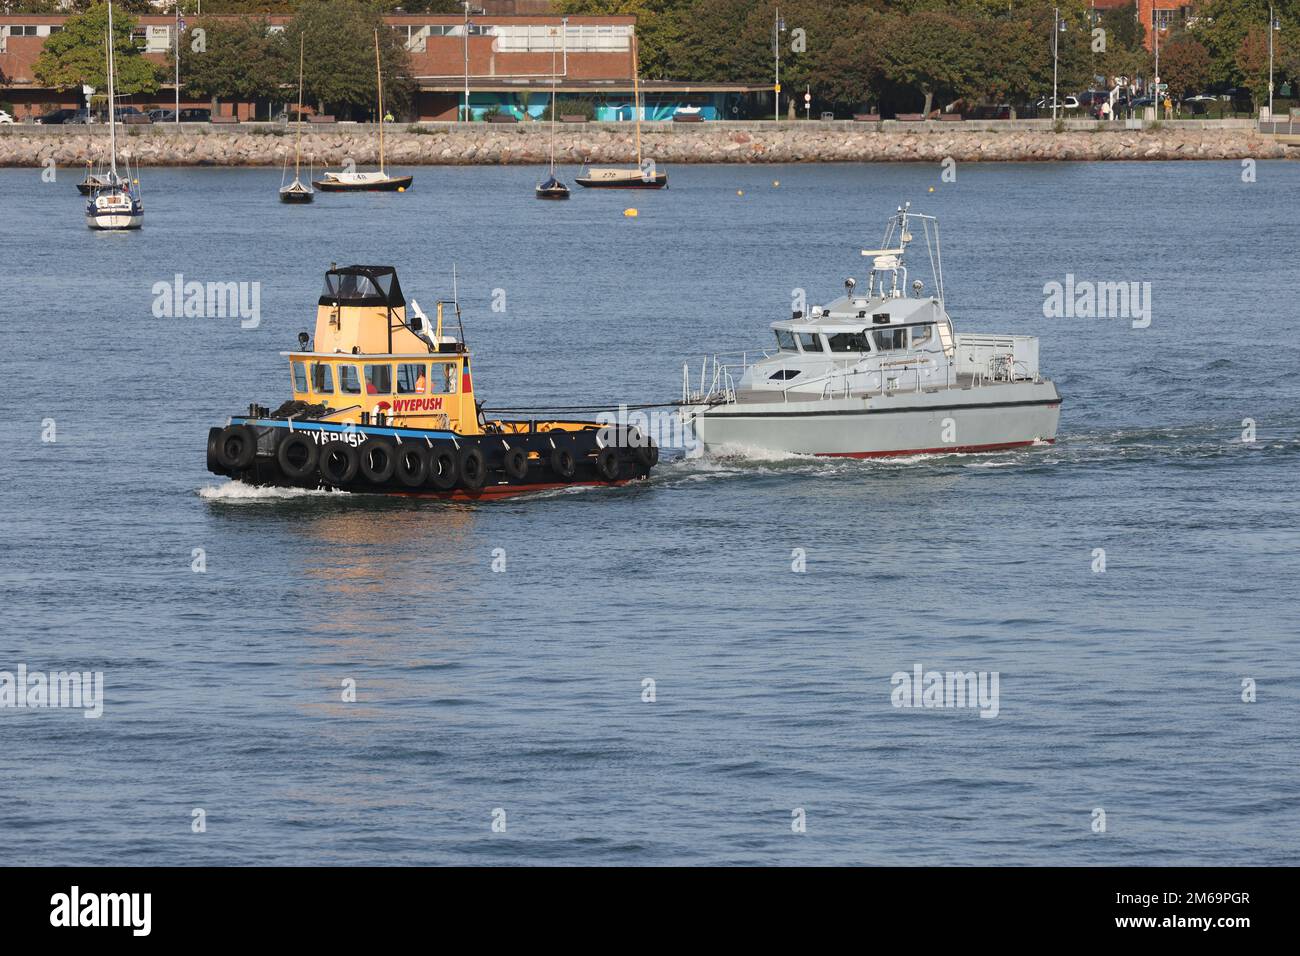 Il rimorchiatore WYEPUSH traina l'ex-Royal Navy pattuglia SCIMITAR dal porto Foto Stock